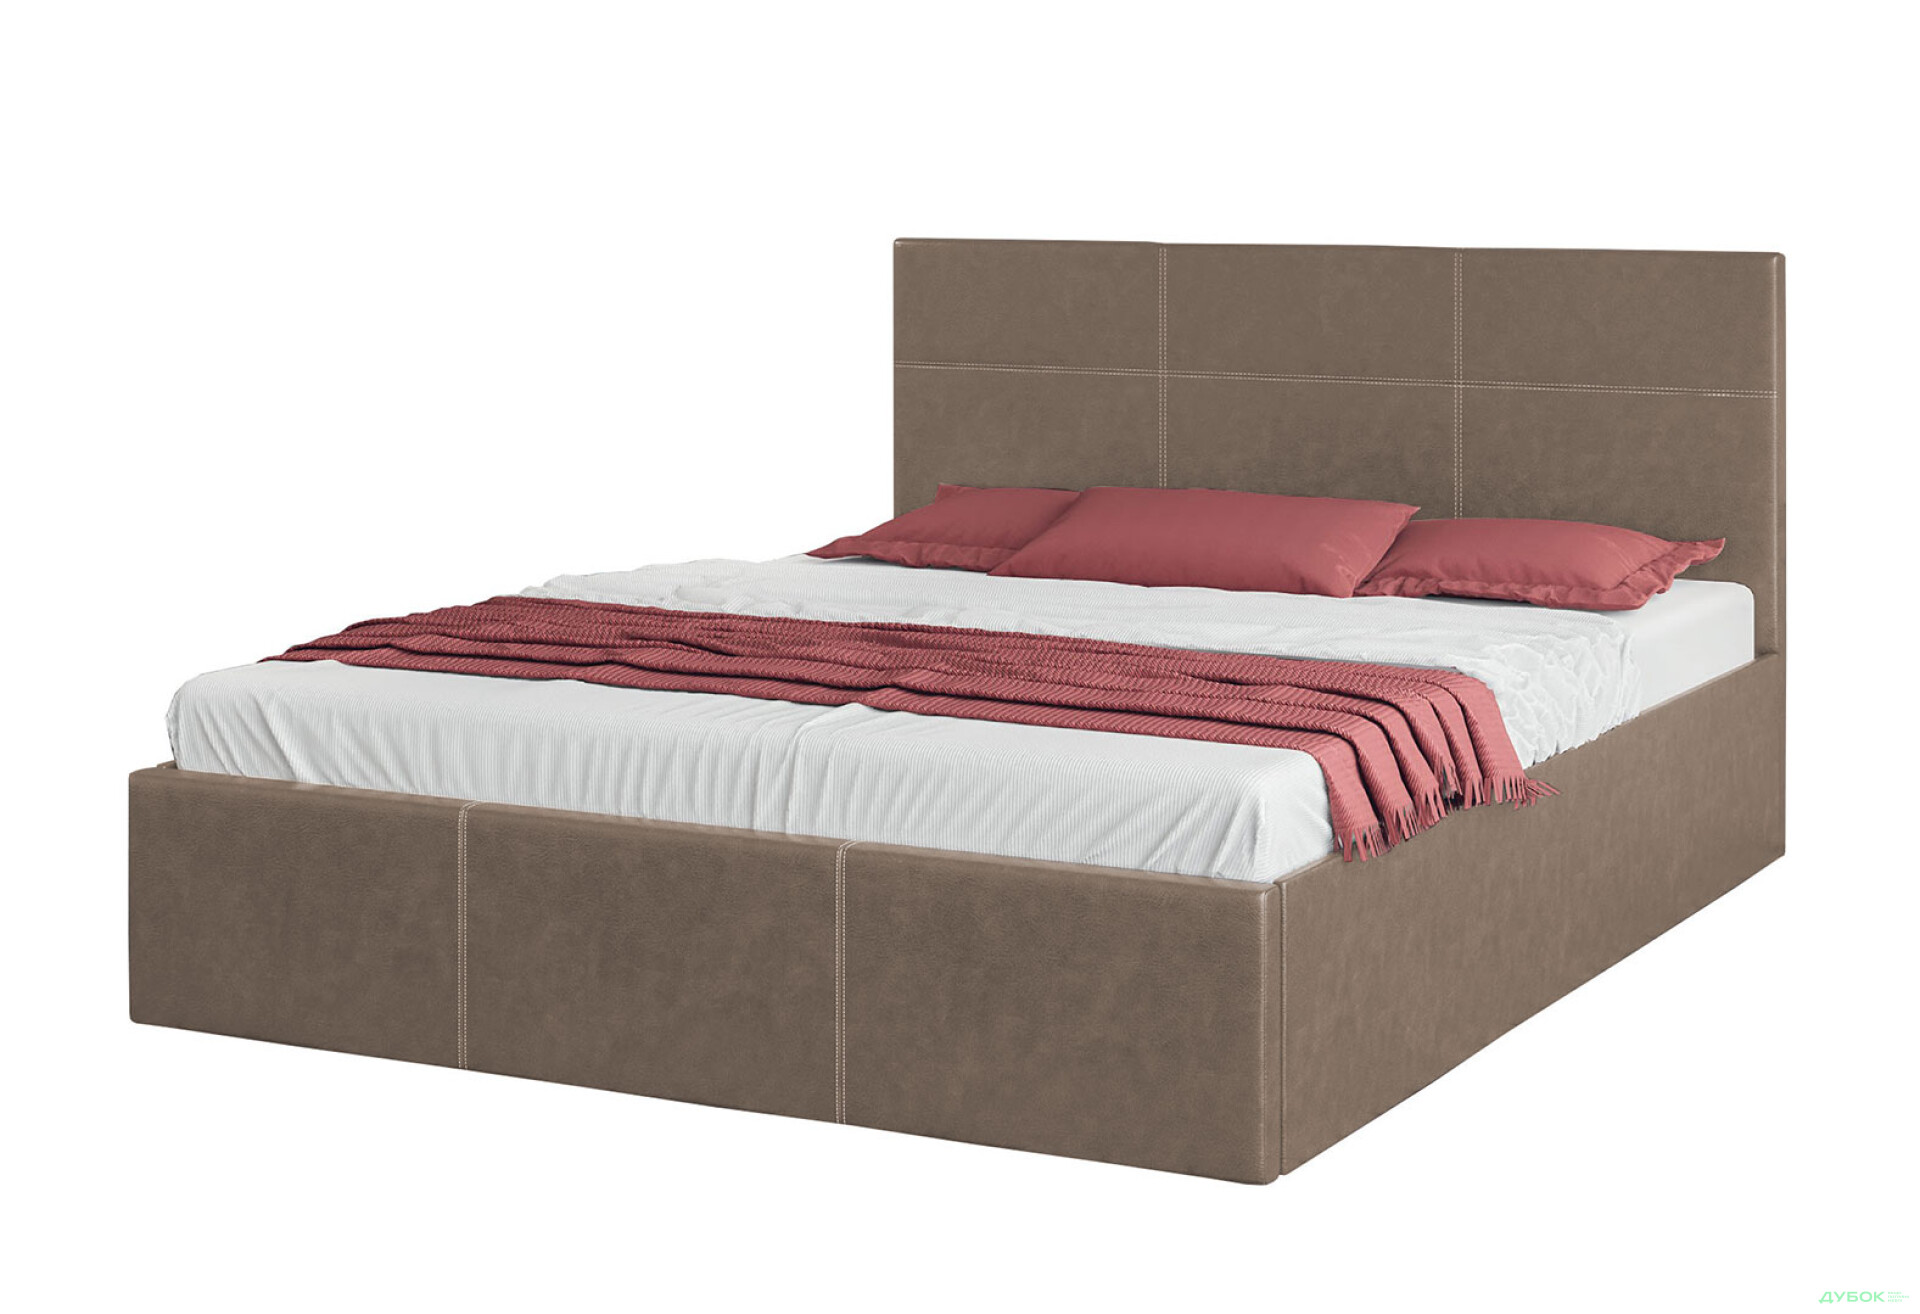 Фото 1 - Ліжко-подіум Світ Меблів Кароліна 5, 160х200 см Тканина Bagira 32